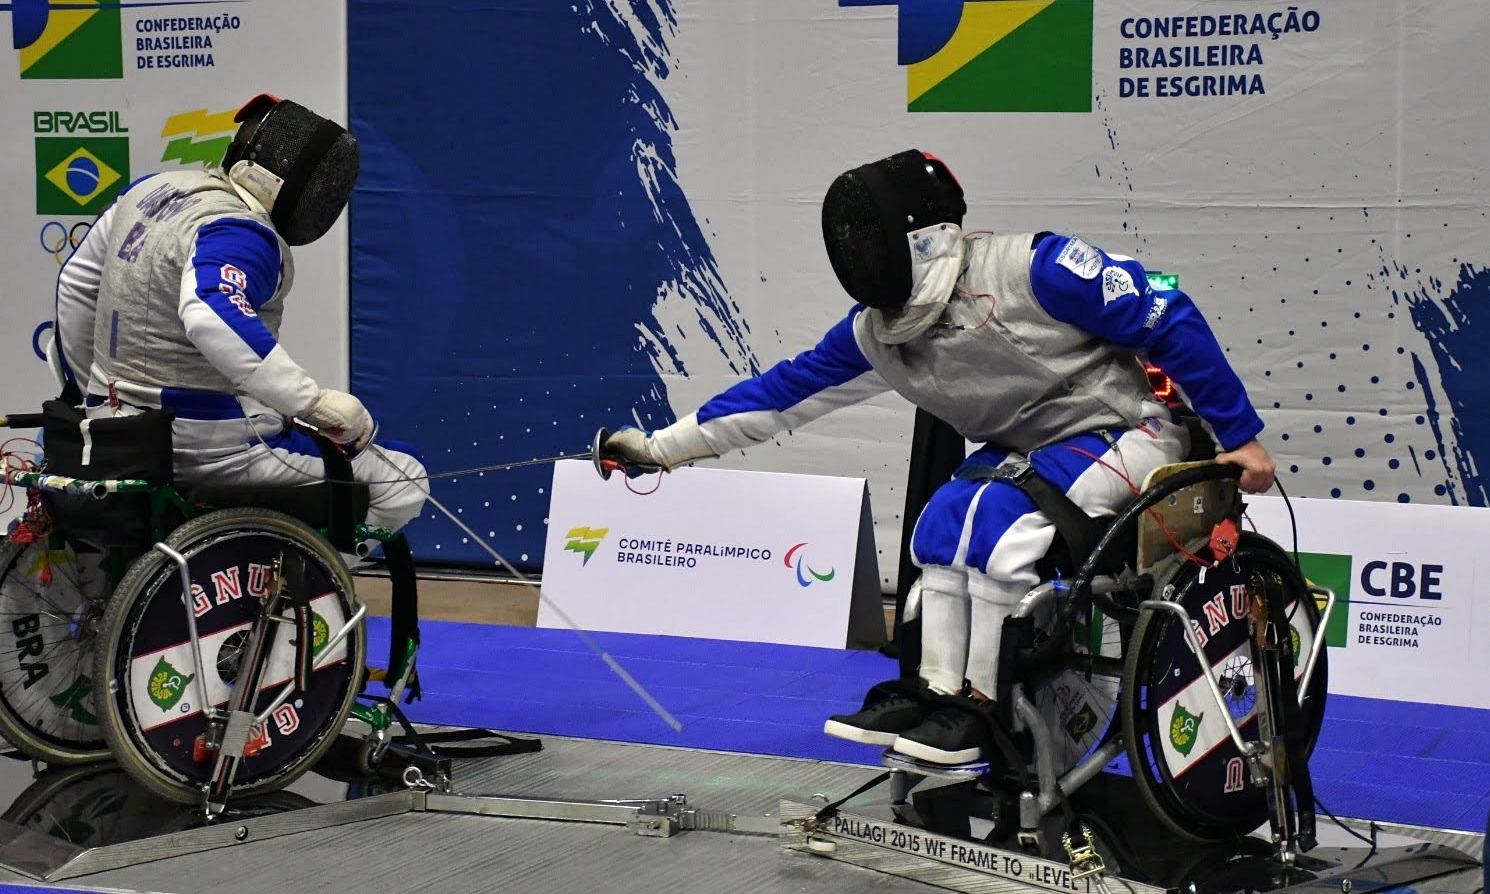 De olho no futuro, esgrima paralímpica realiza três eventos em São Paulo